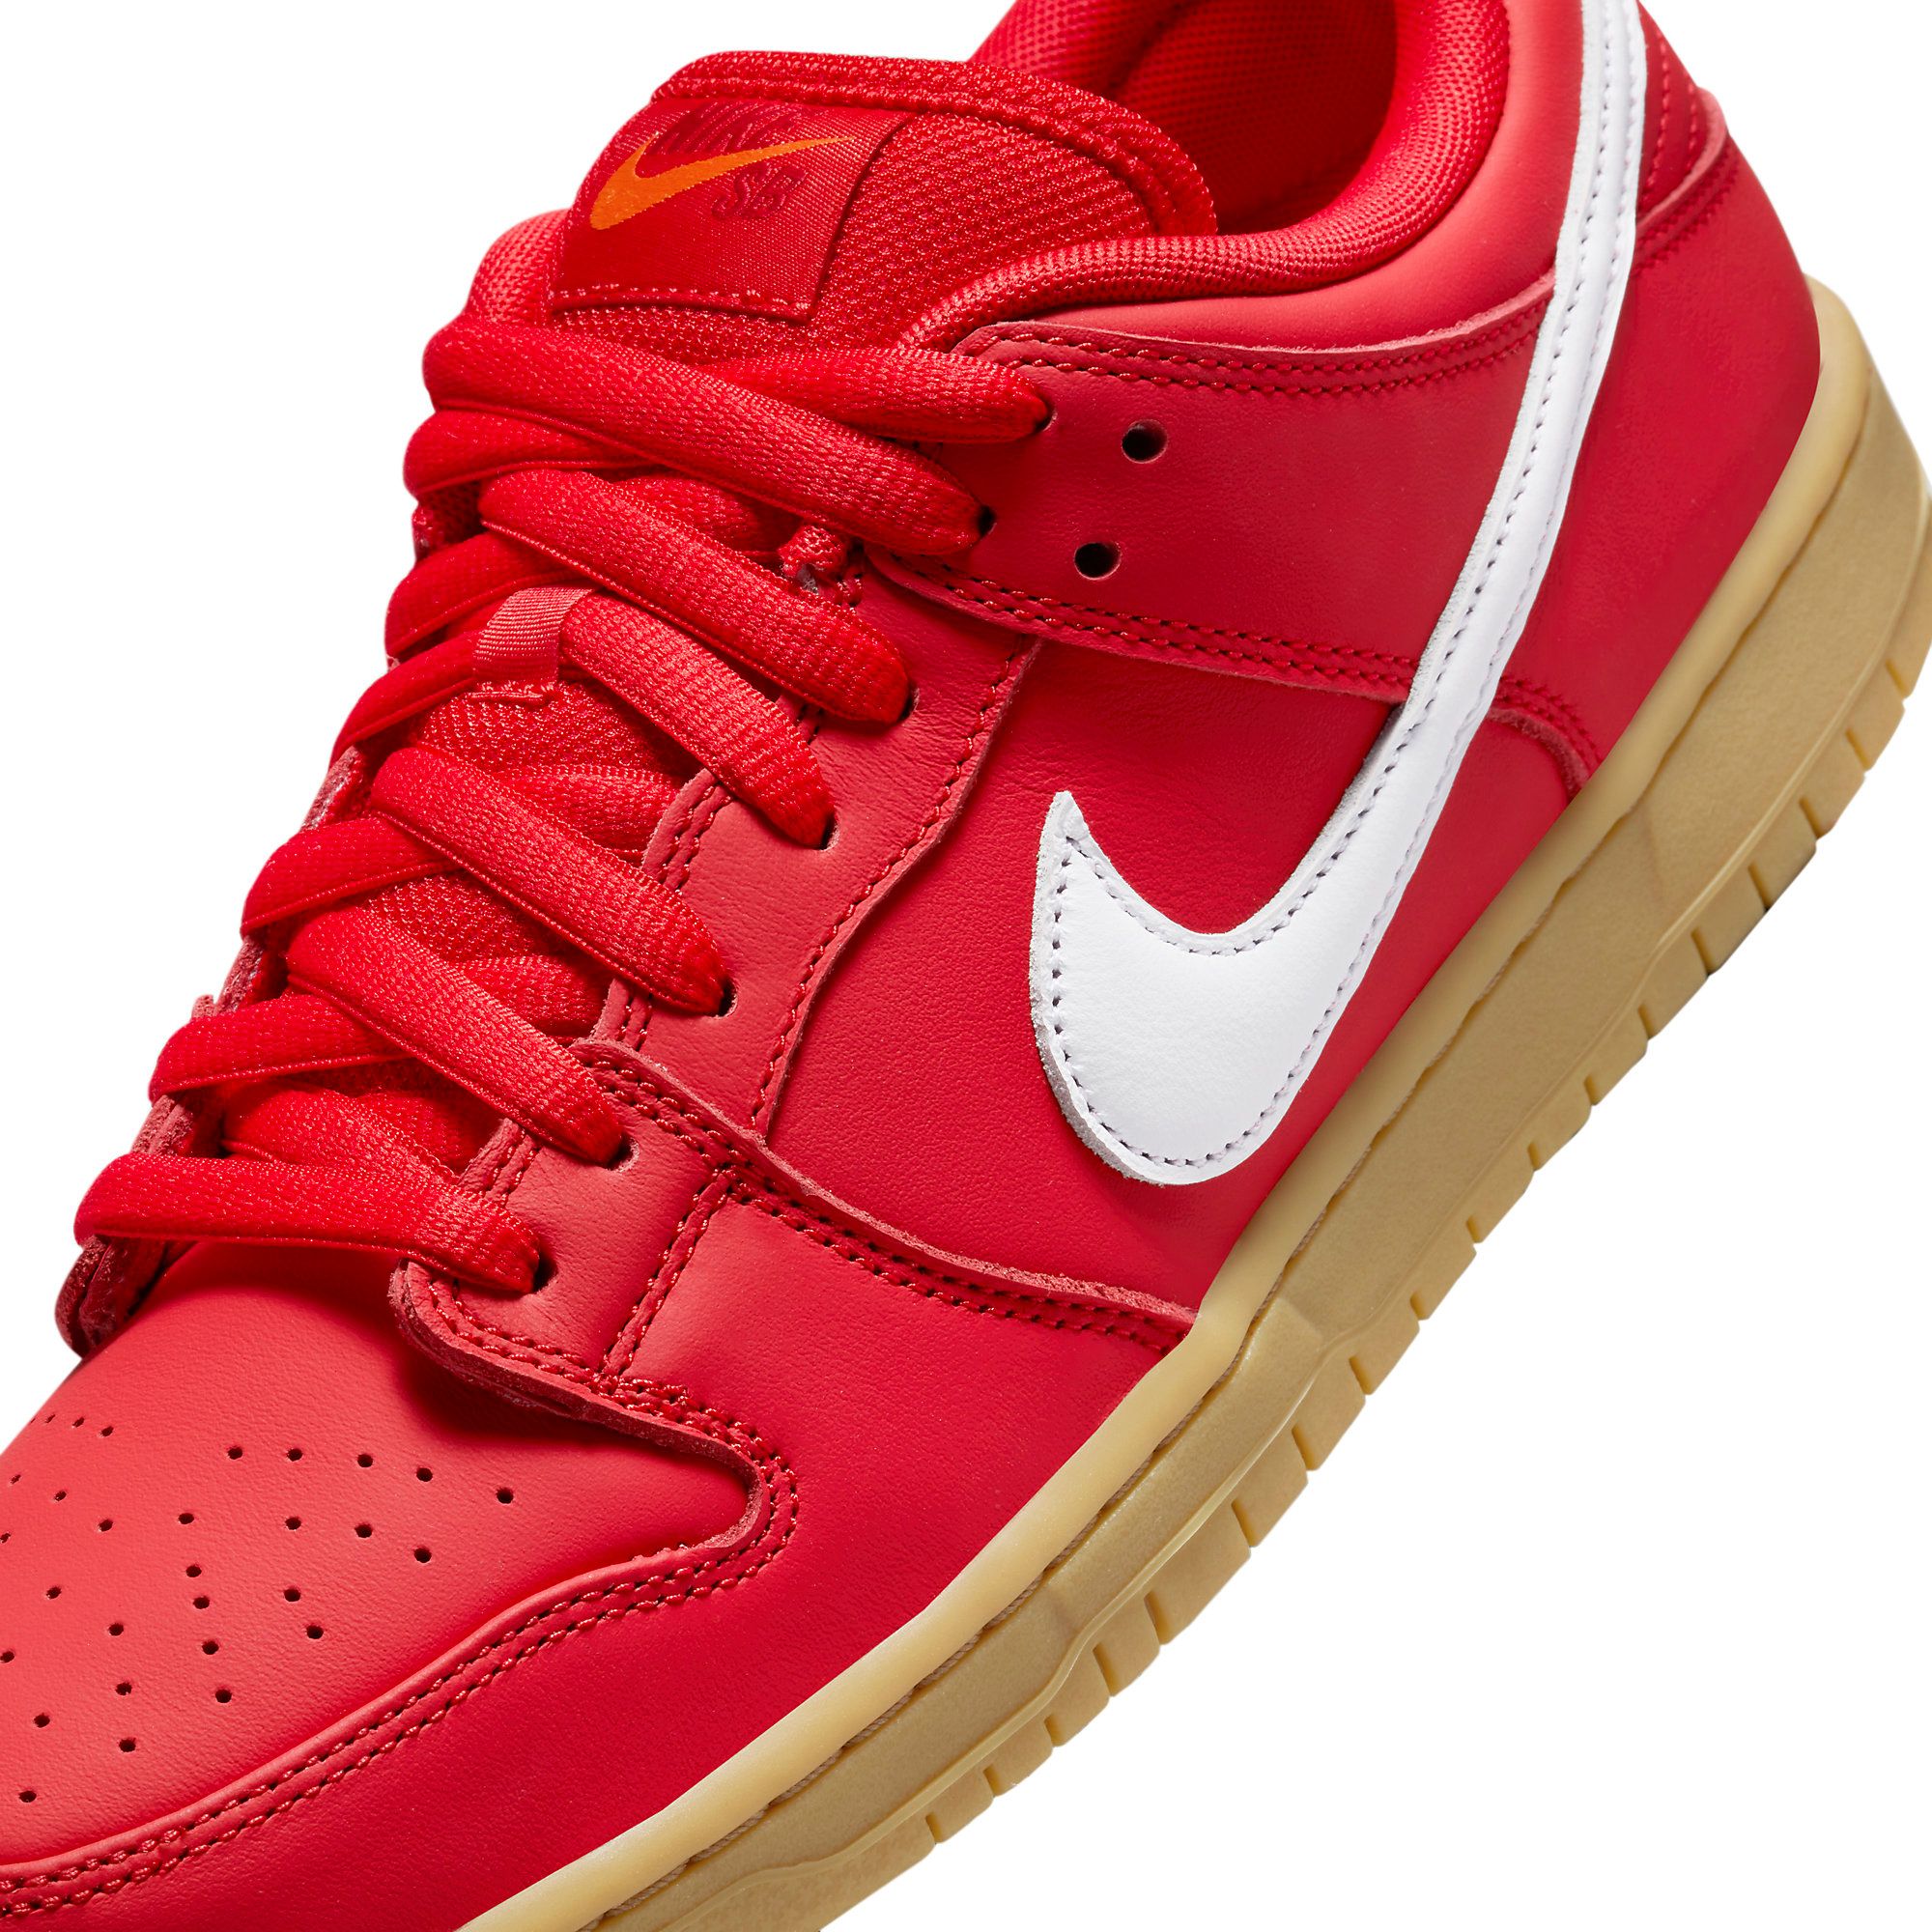 Official Images // Nike SB Dunk Low “Red Gum” | OdegardcarpetsShops°